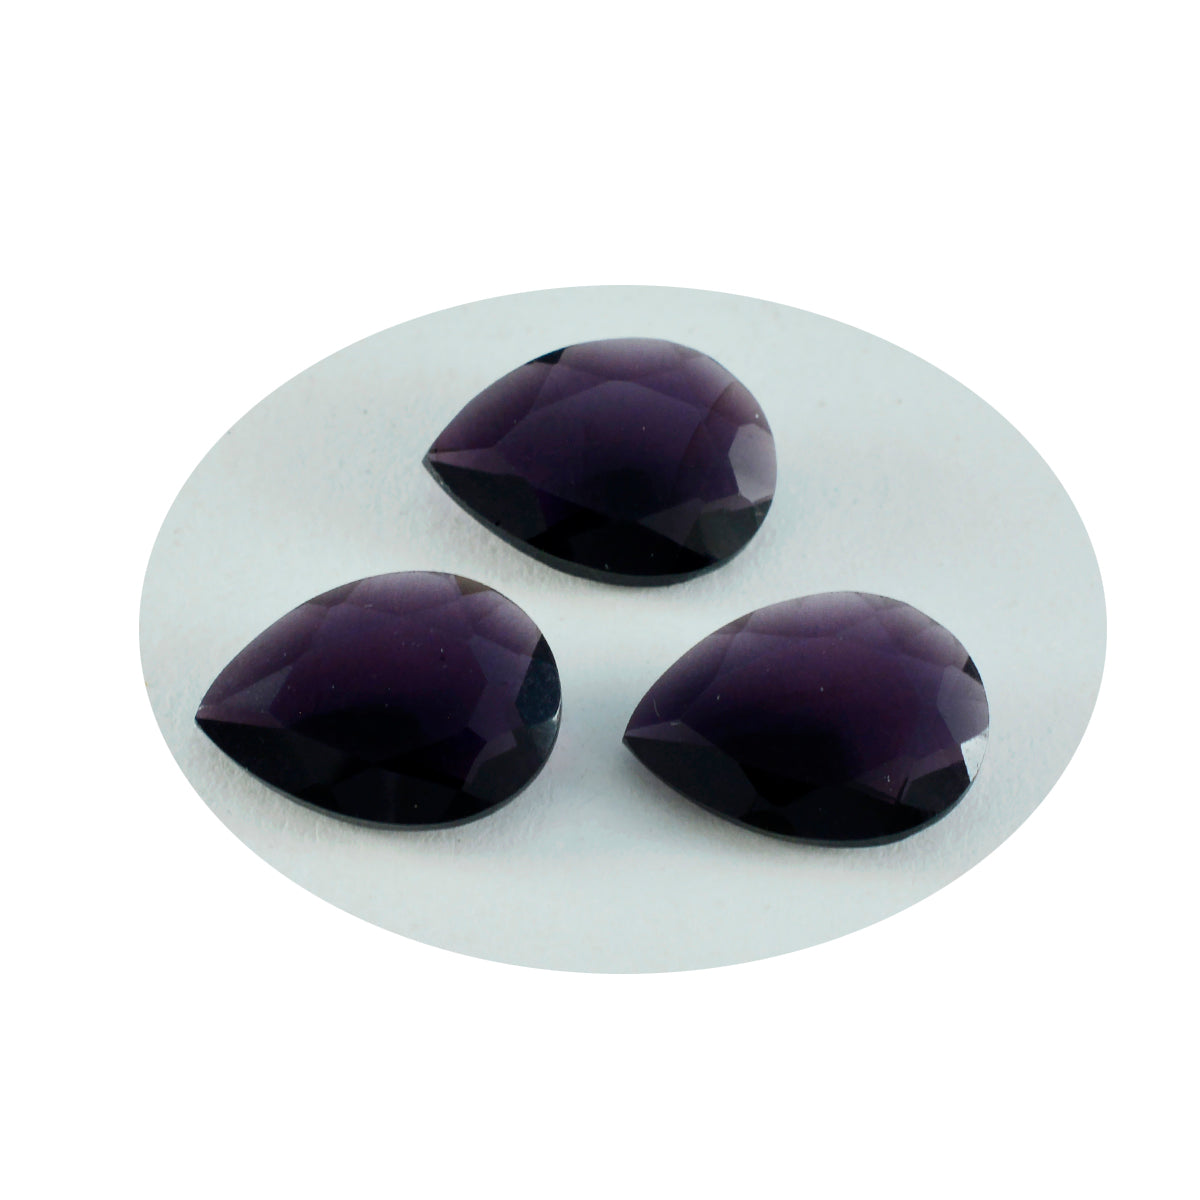 riyogems 1шт фиолетовый аметист cz граненый 12x16 мм грушевидная форма качество A1 свободный драгоценный камень